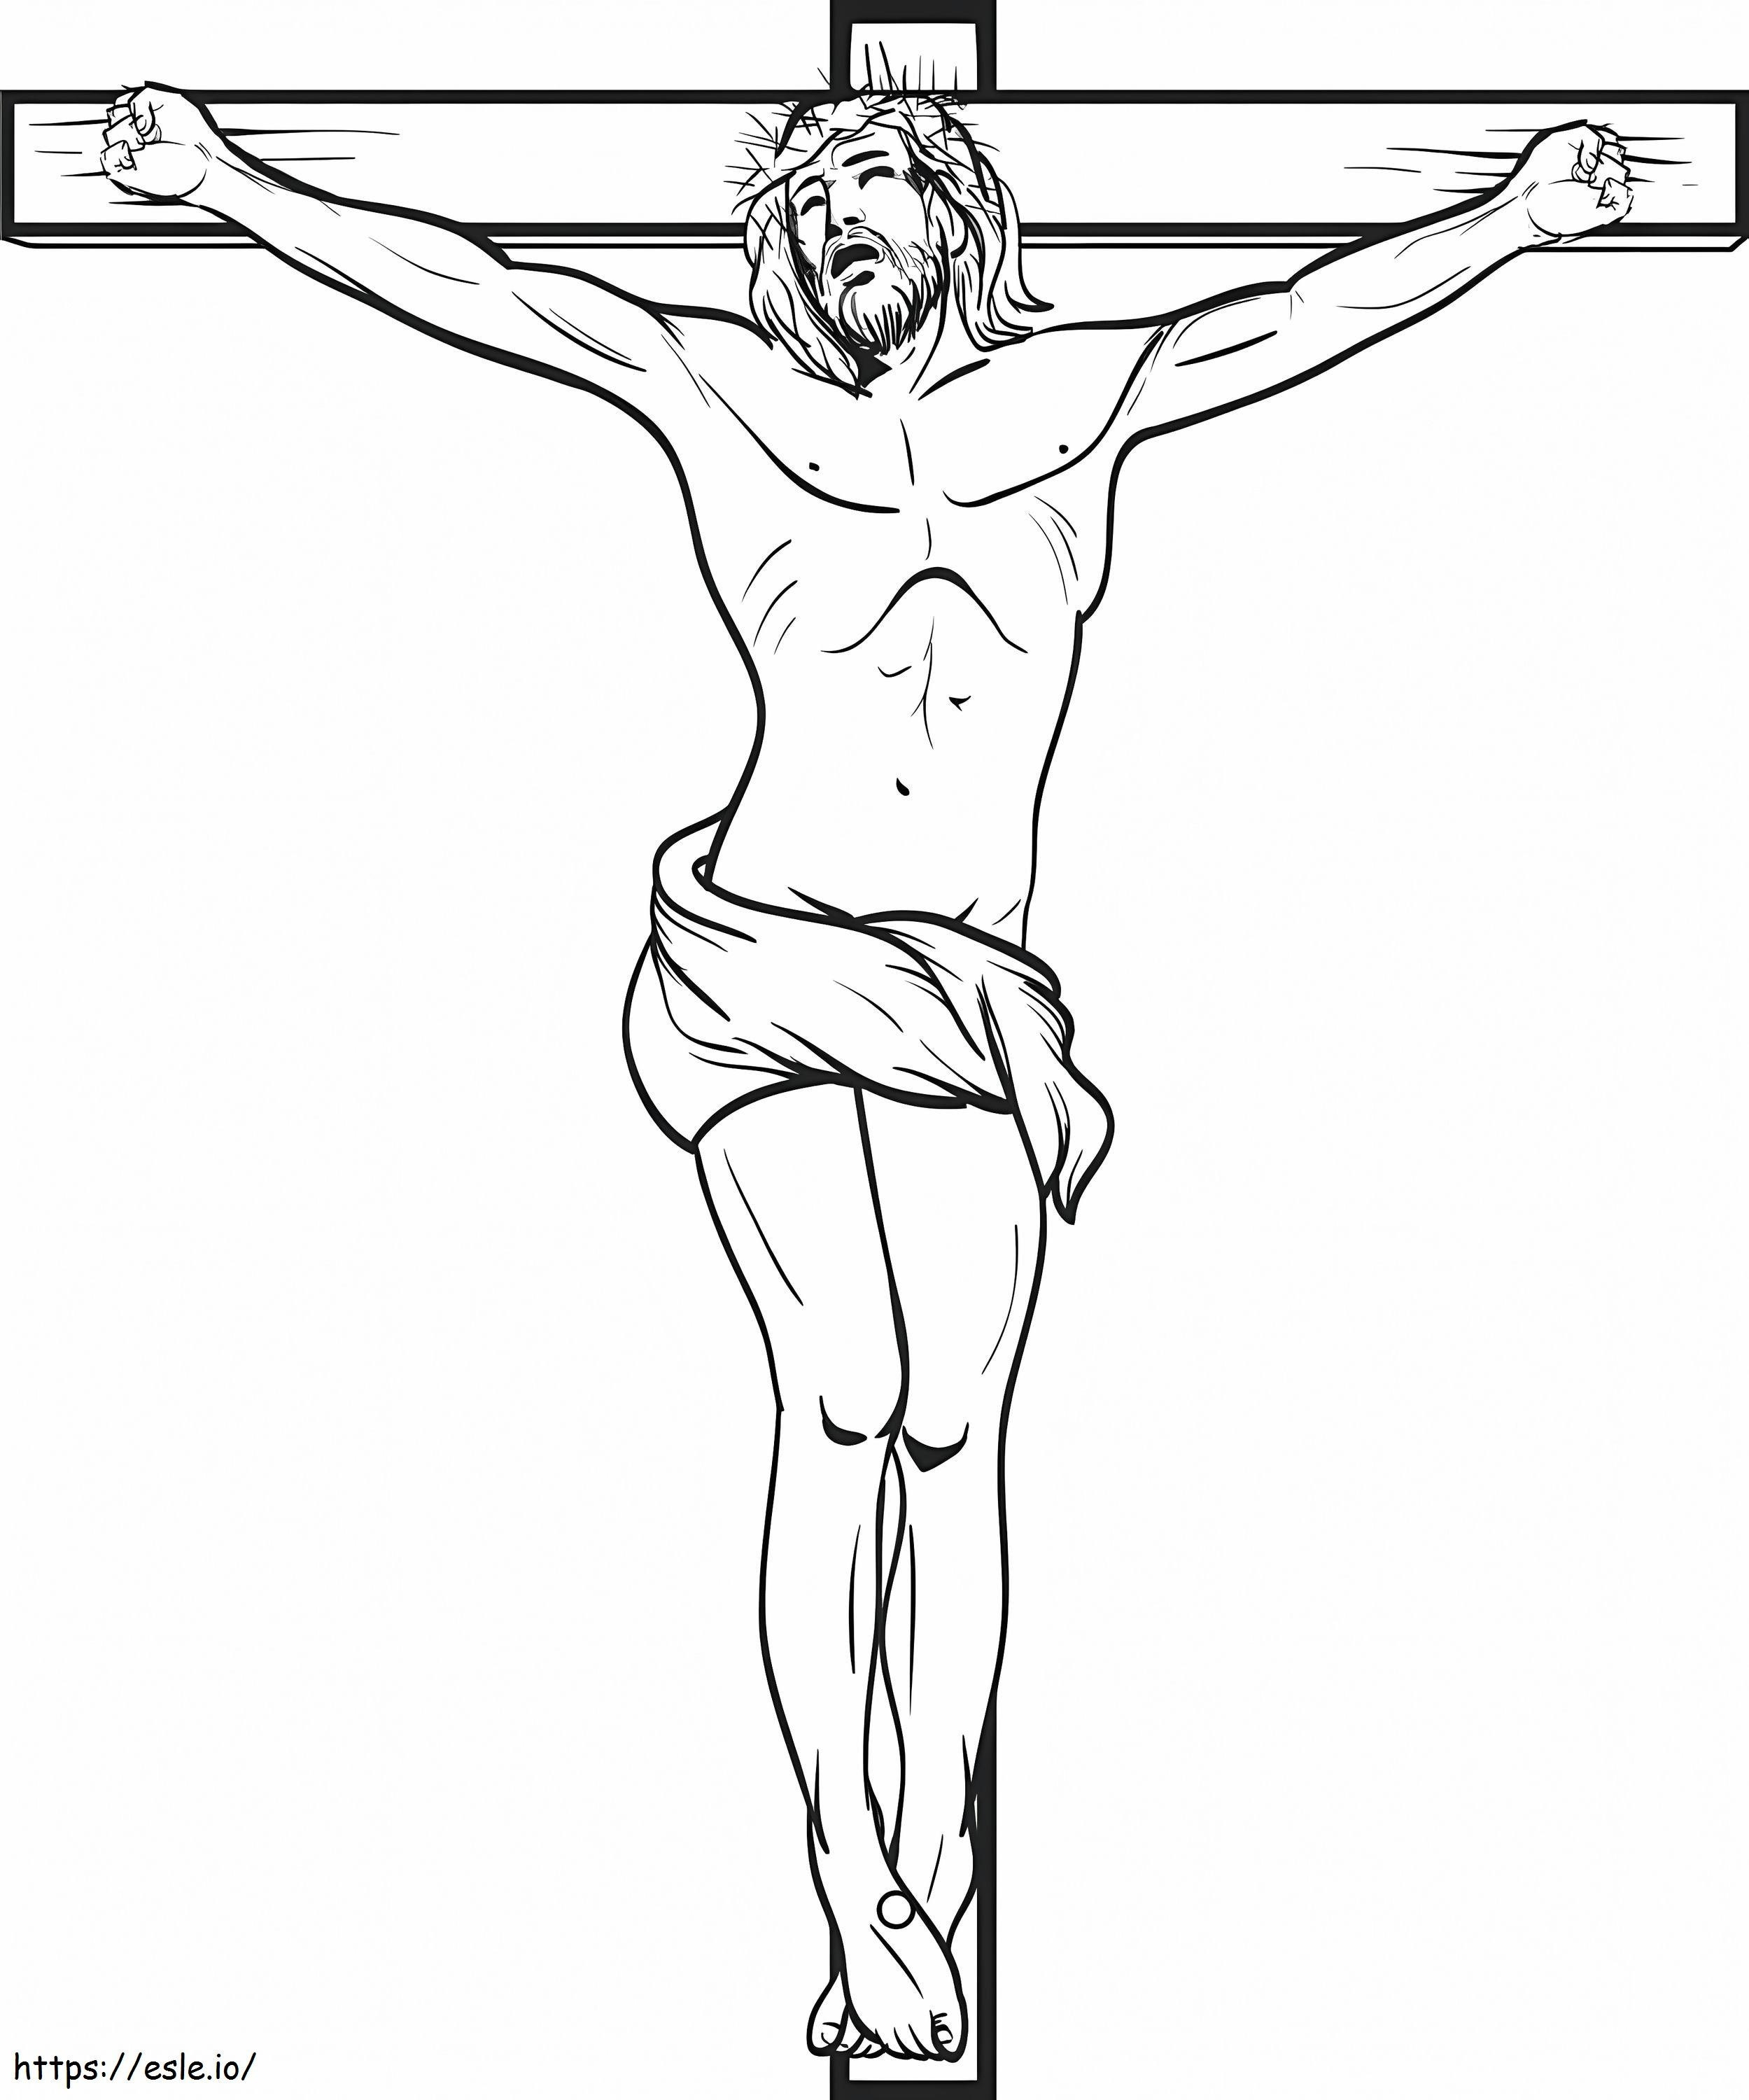 Gesù Cristo Crocifisso Sulla Croce da colorare